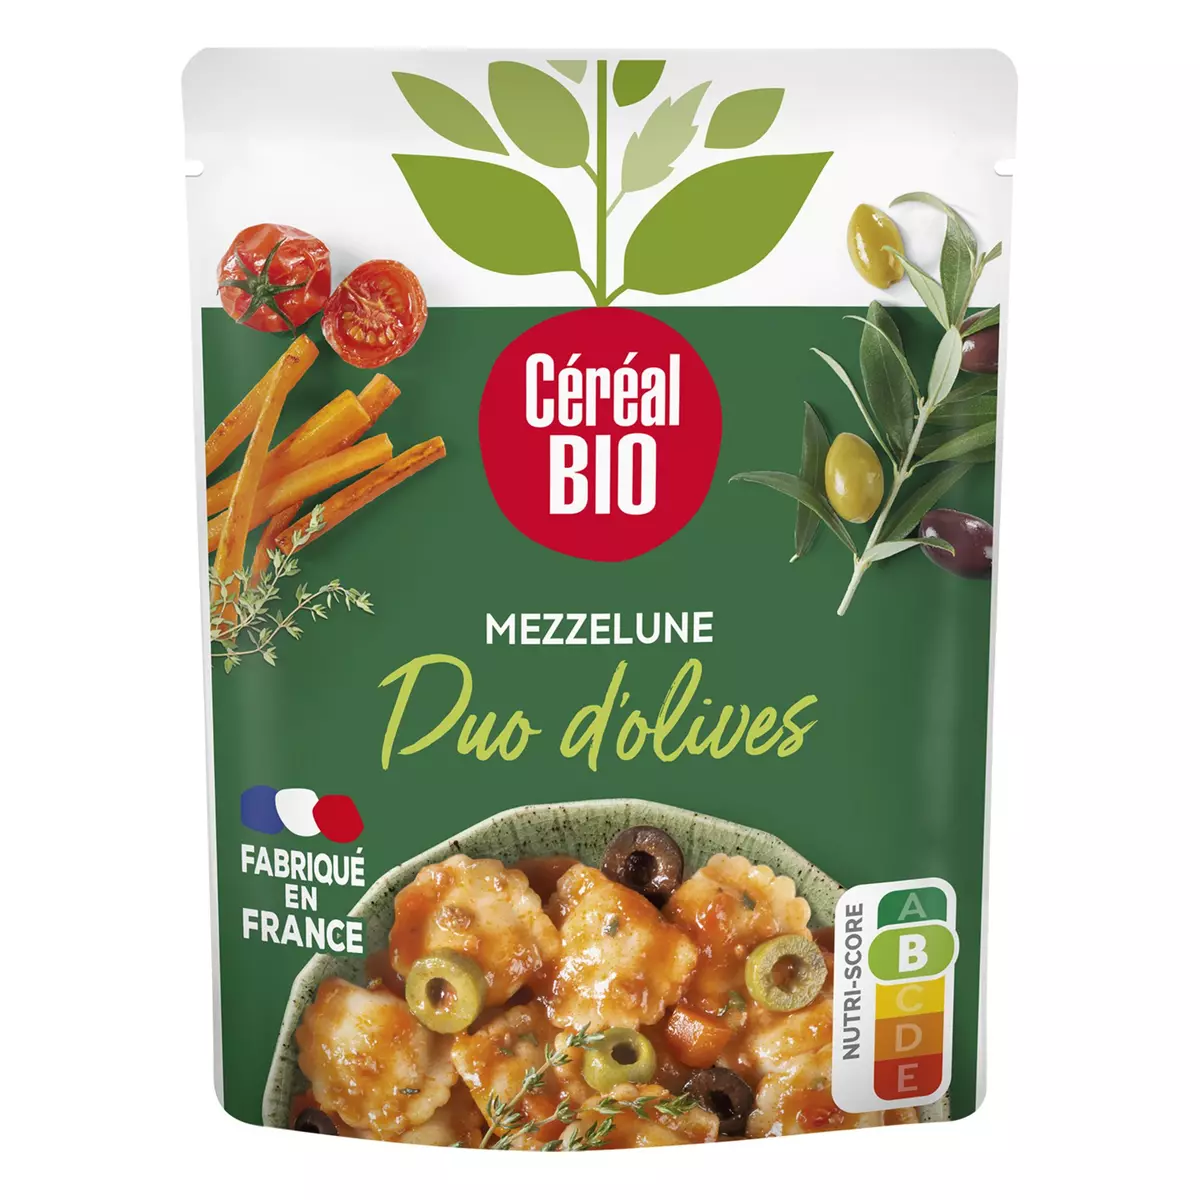 CÉRÉAL BIO Mezzelune aux olives sachet express 280g pas cher 